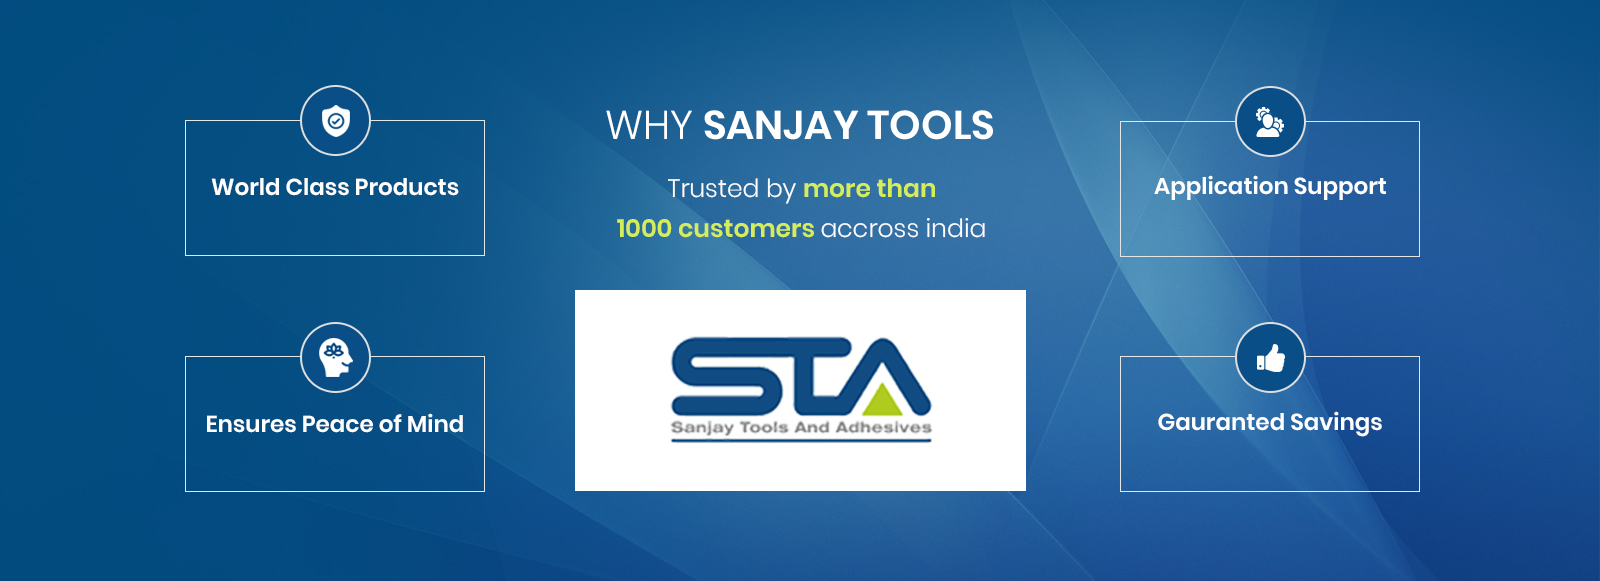 Sanjay Tools and Adhesives